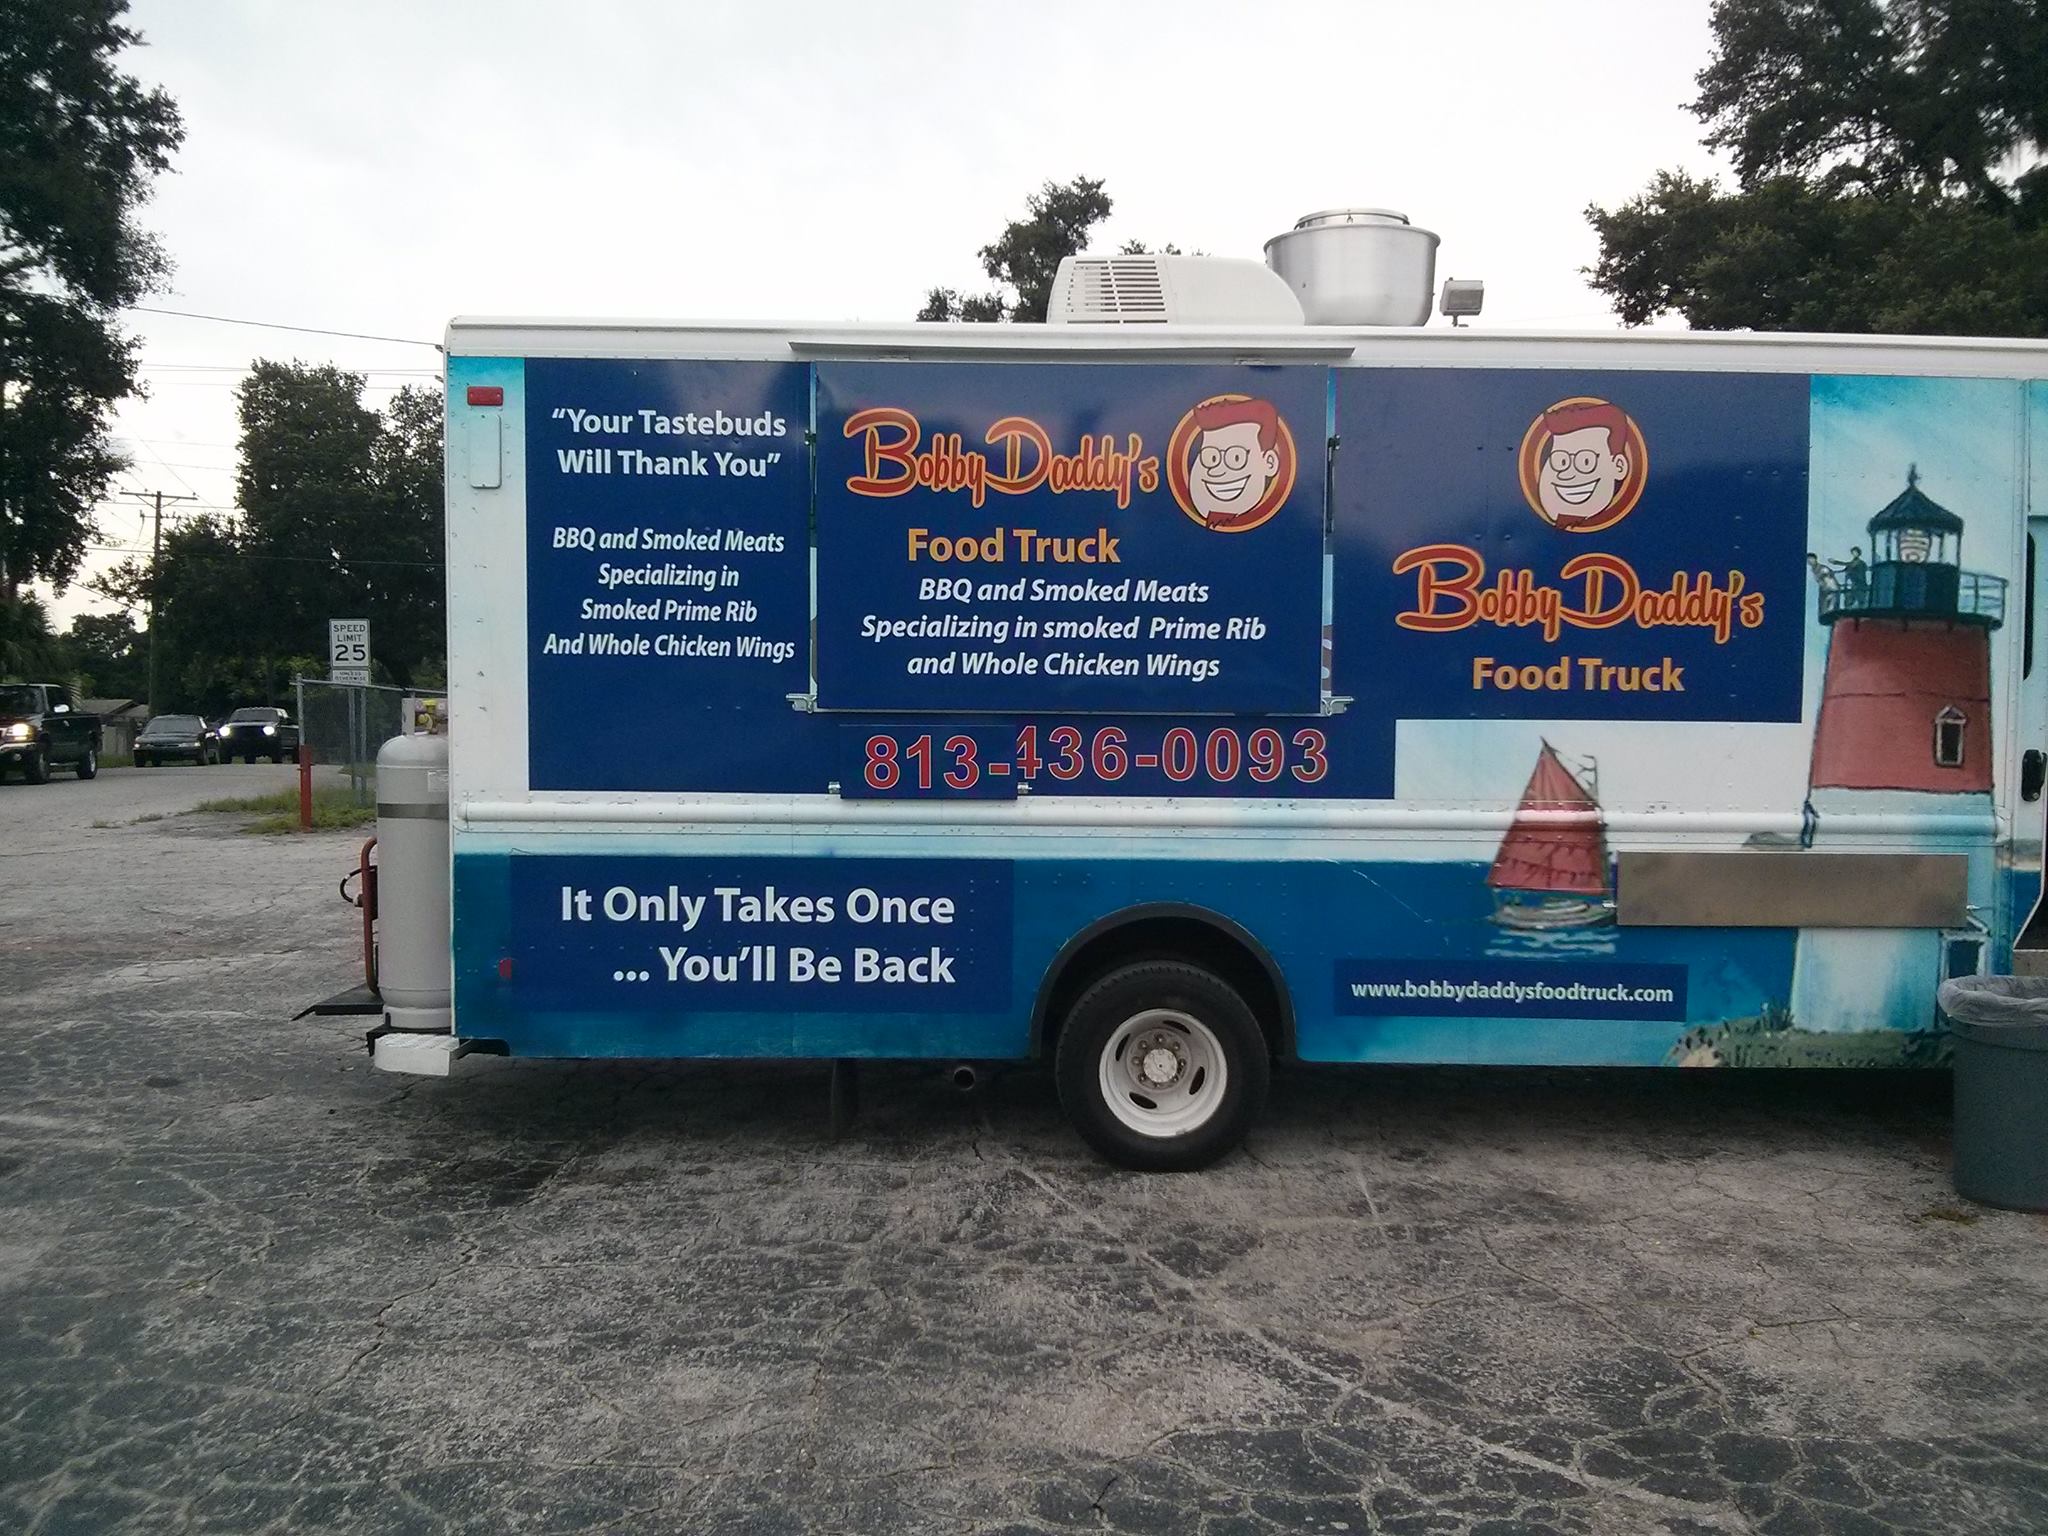 BobbyDaddys Food Truck Food Truck